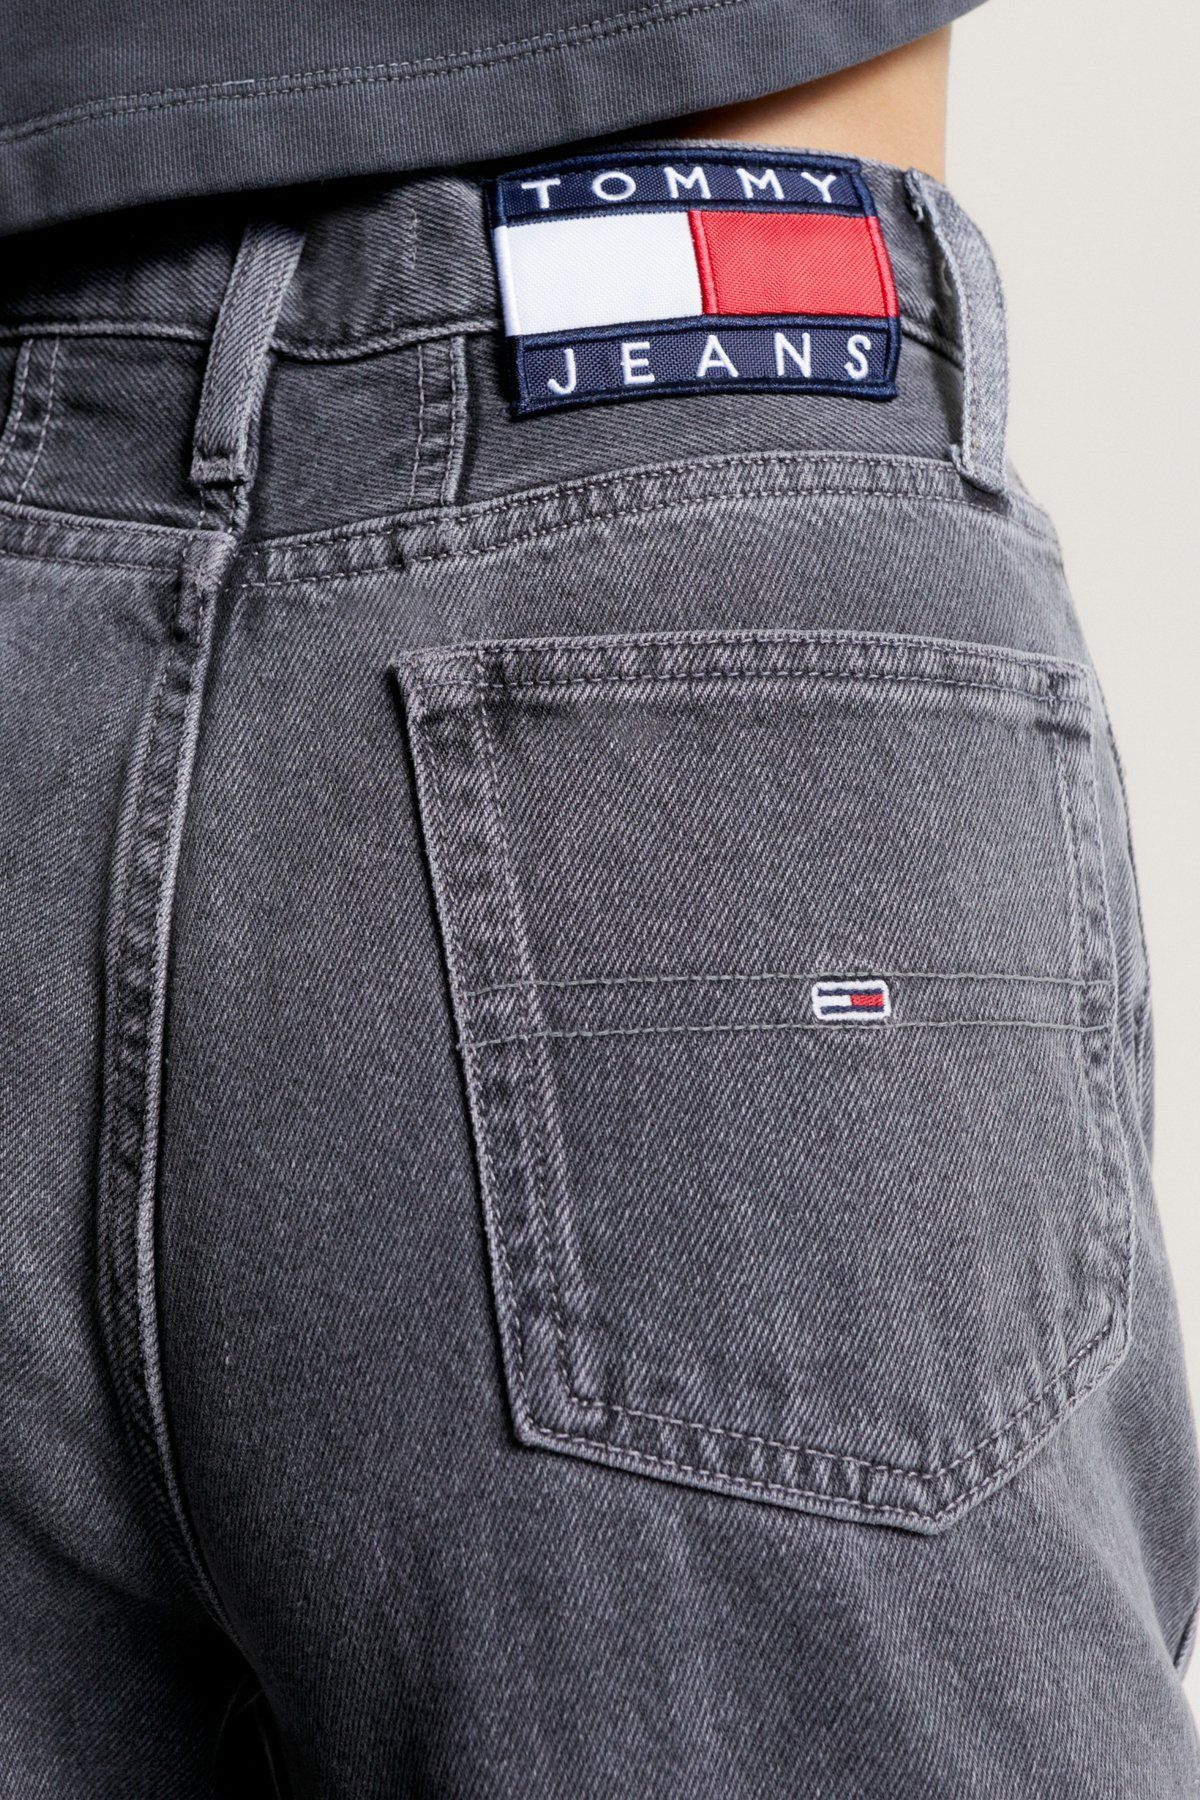 Tommy Jeans جین خاکستری زنانه (کد مدل: DW0DW16647)